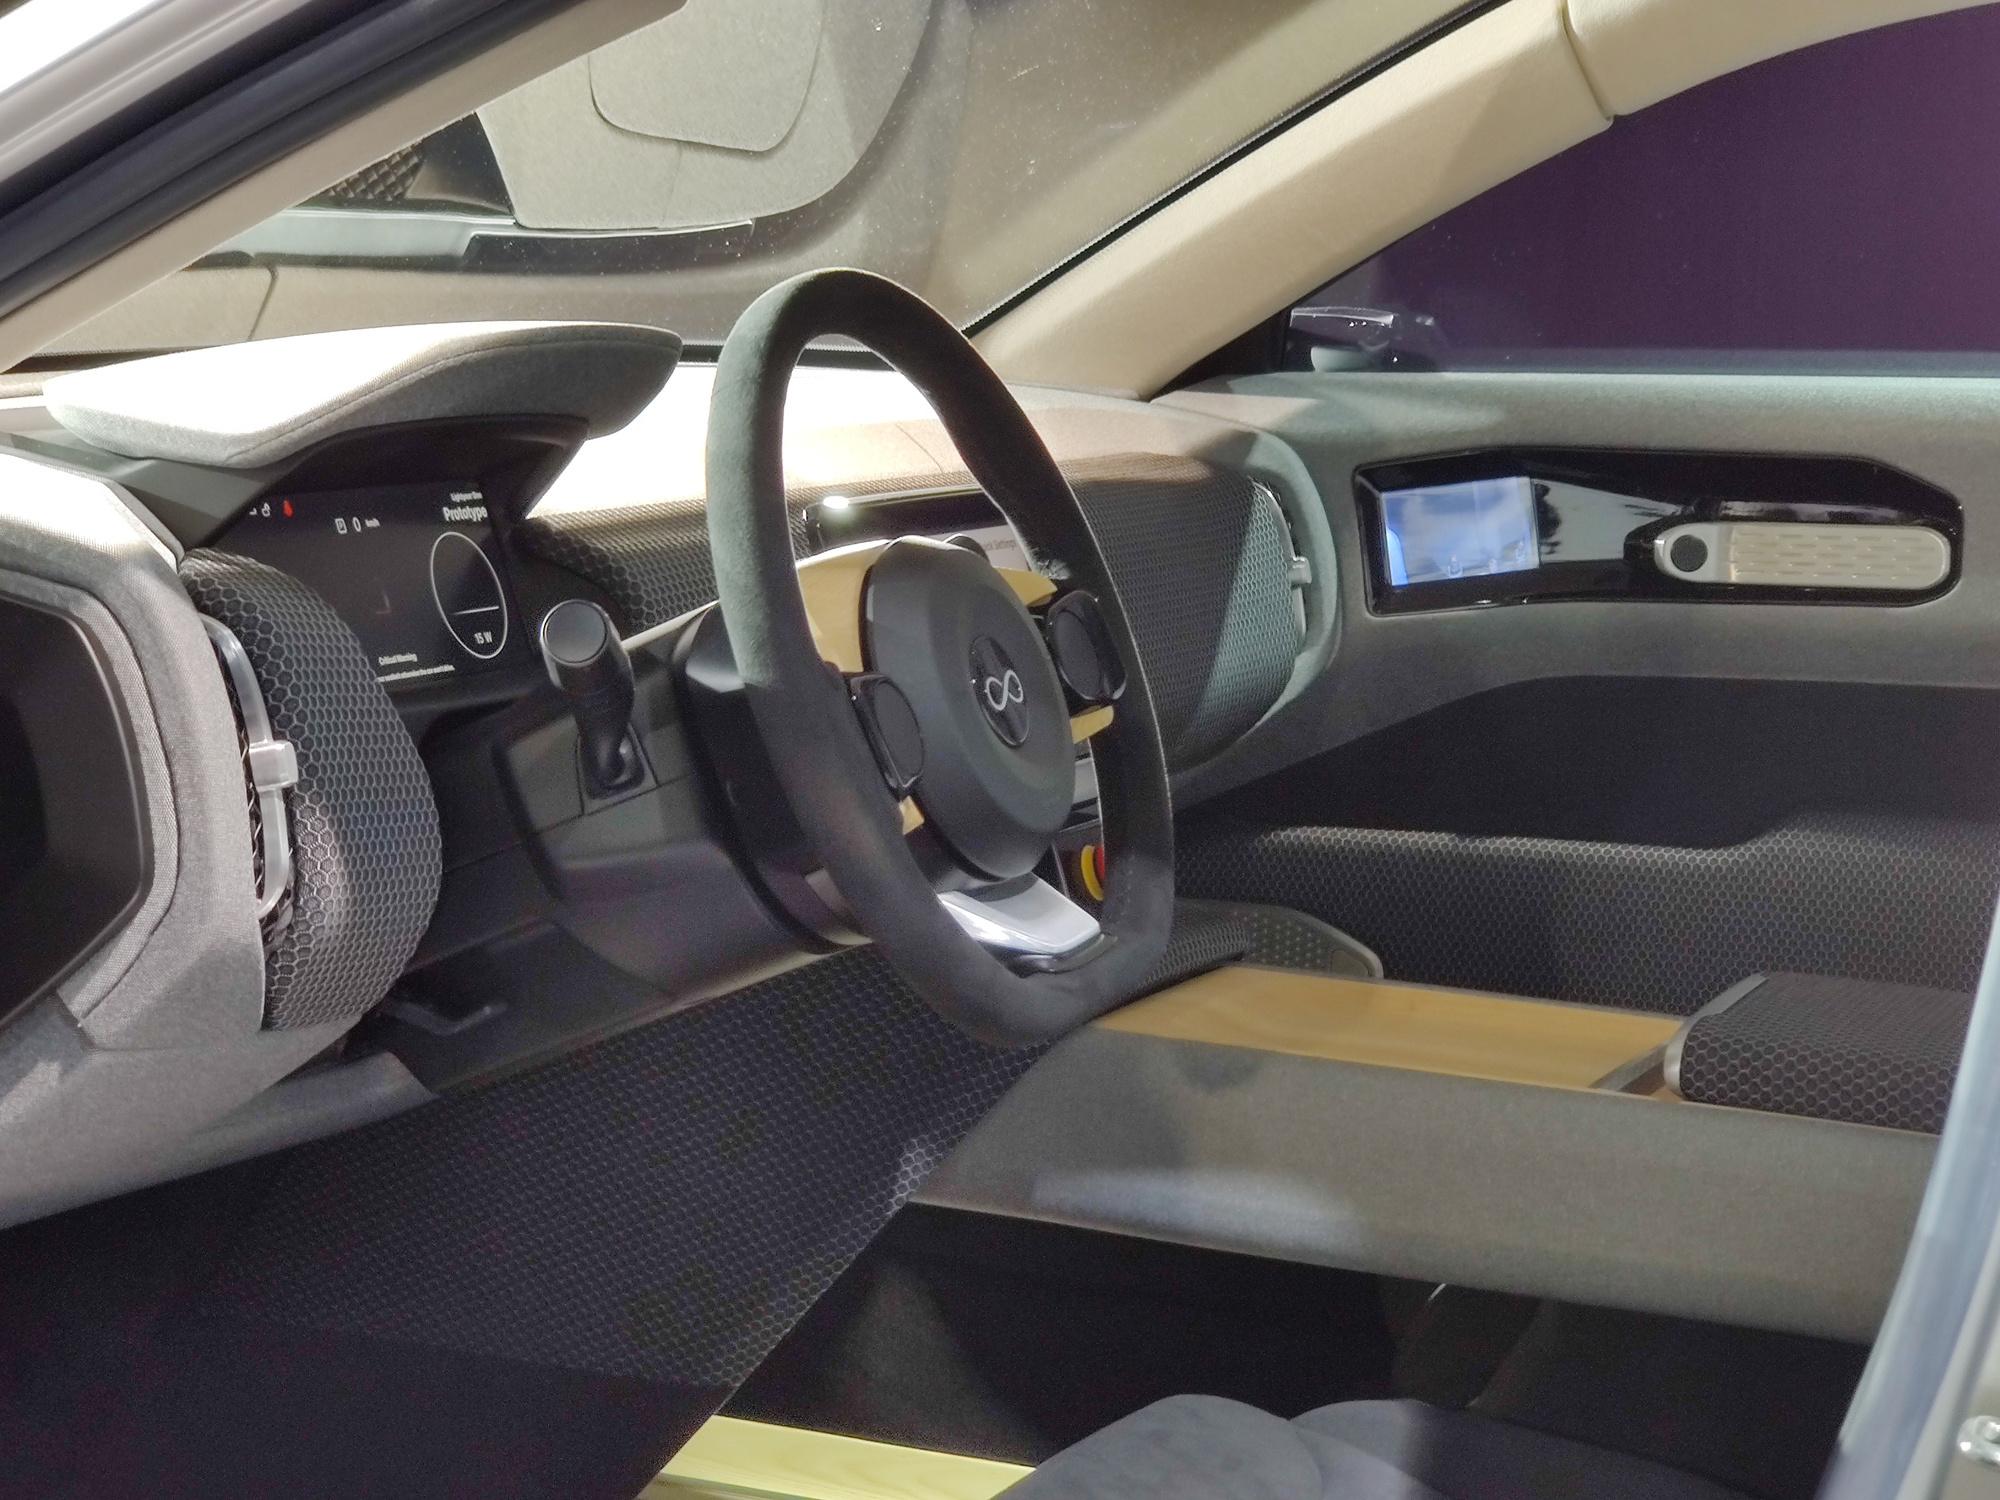 La voiture solaire de Lightyear représente-t-elle le futur de l'automobile?